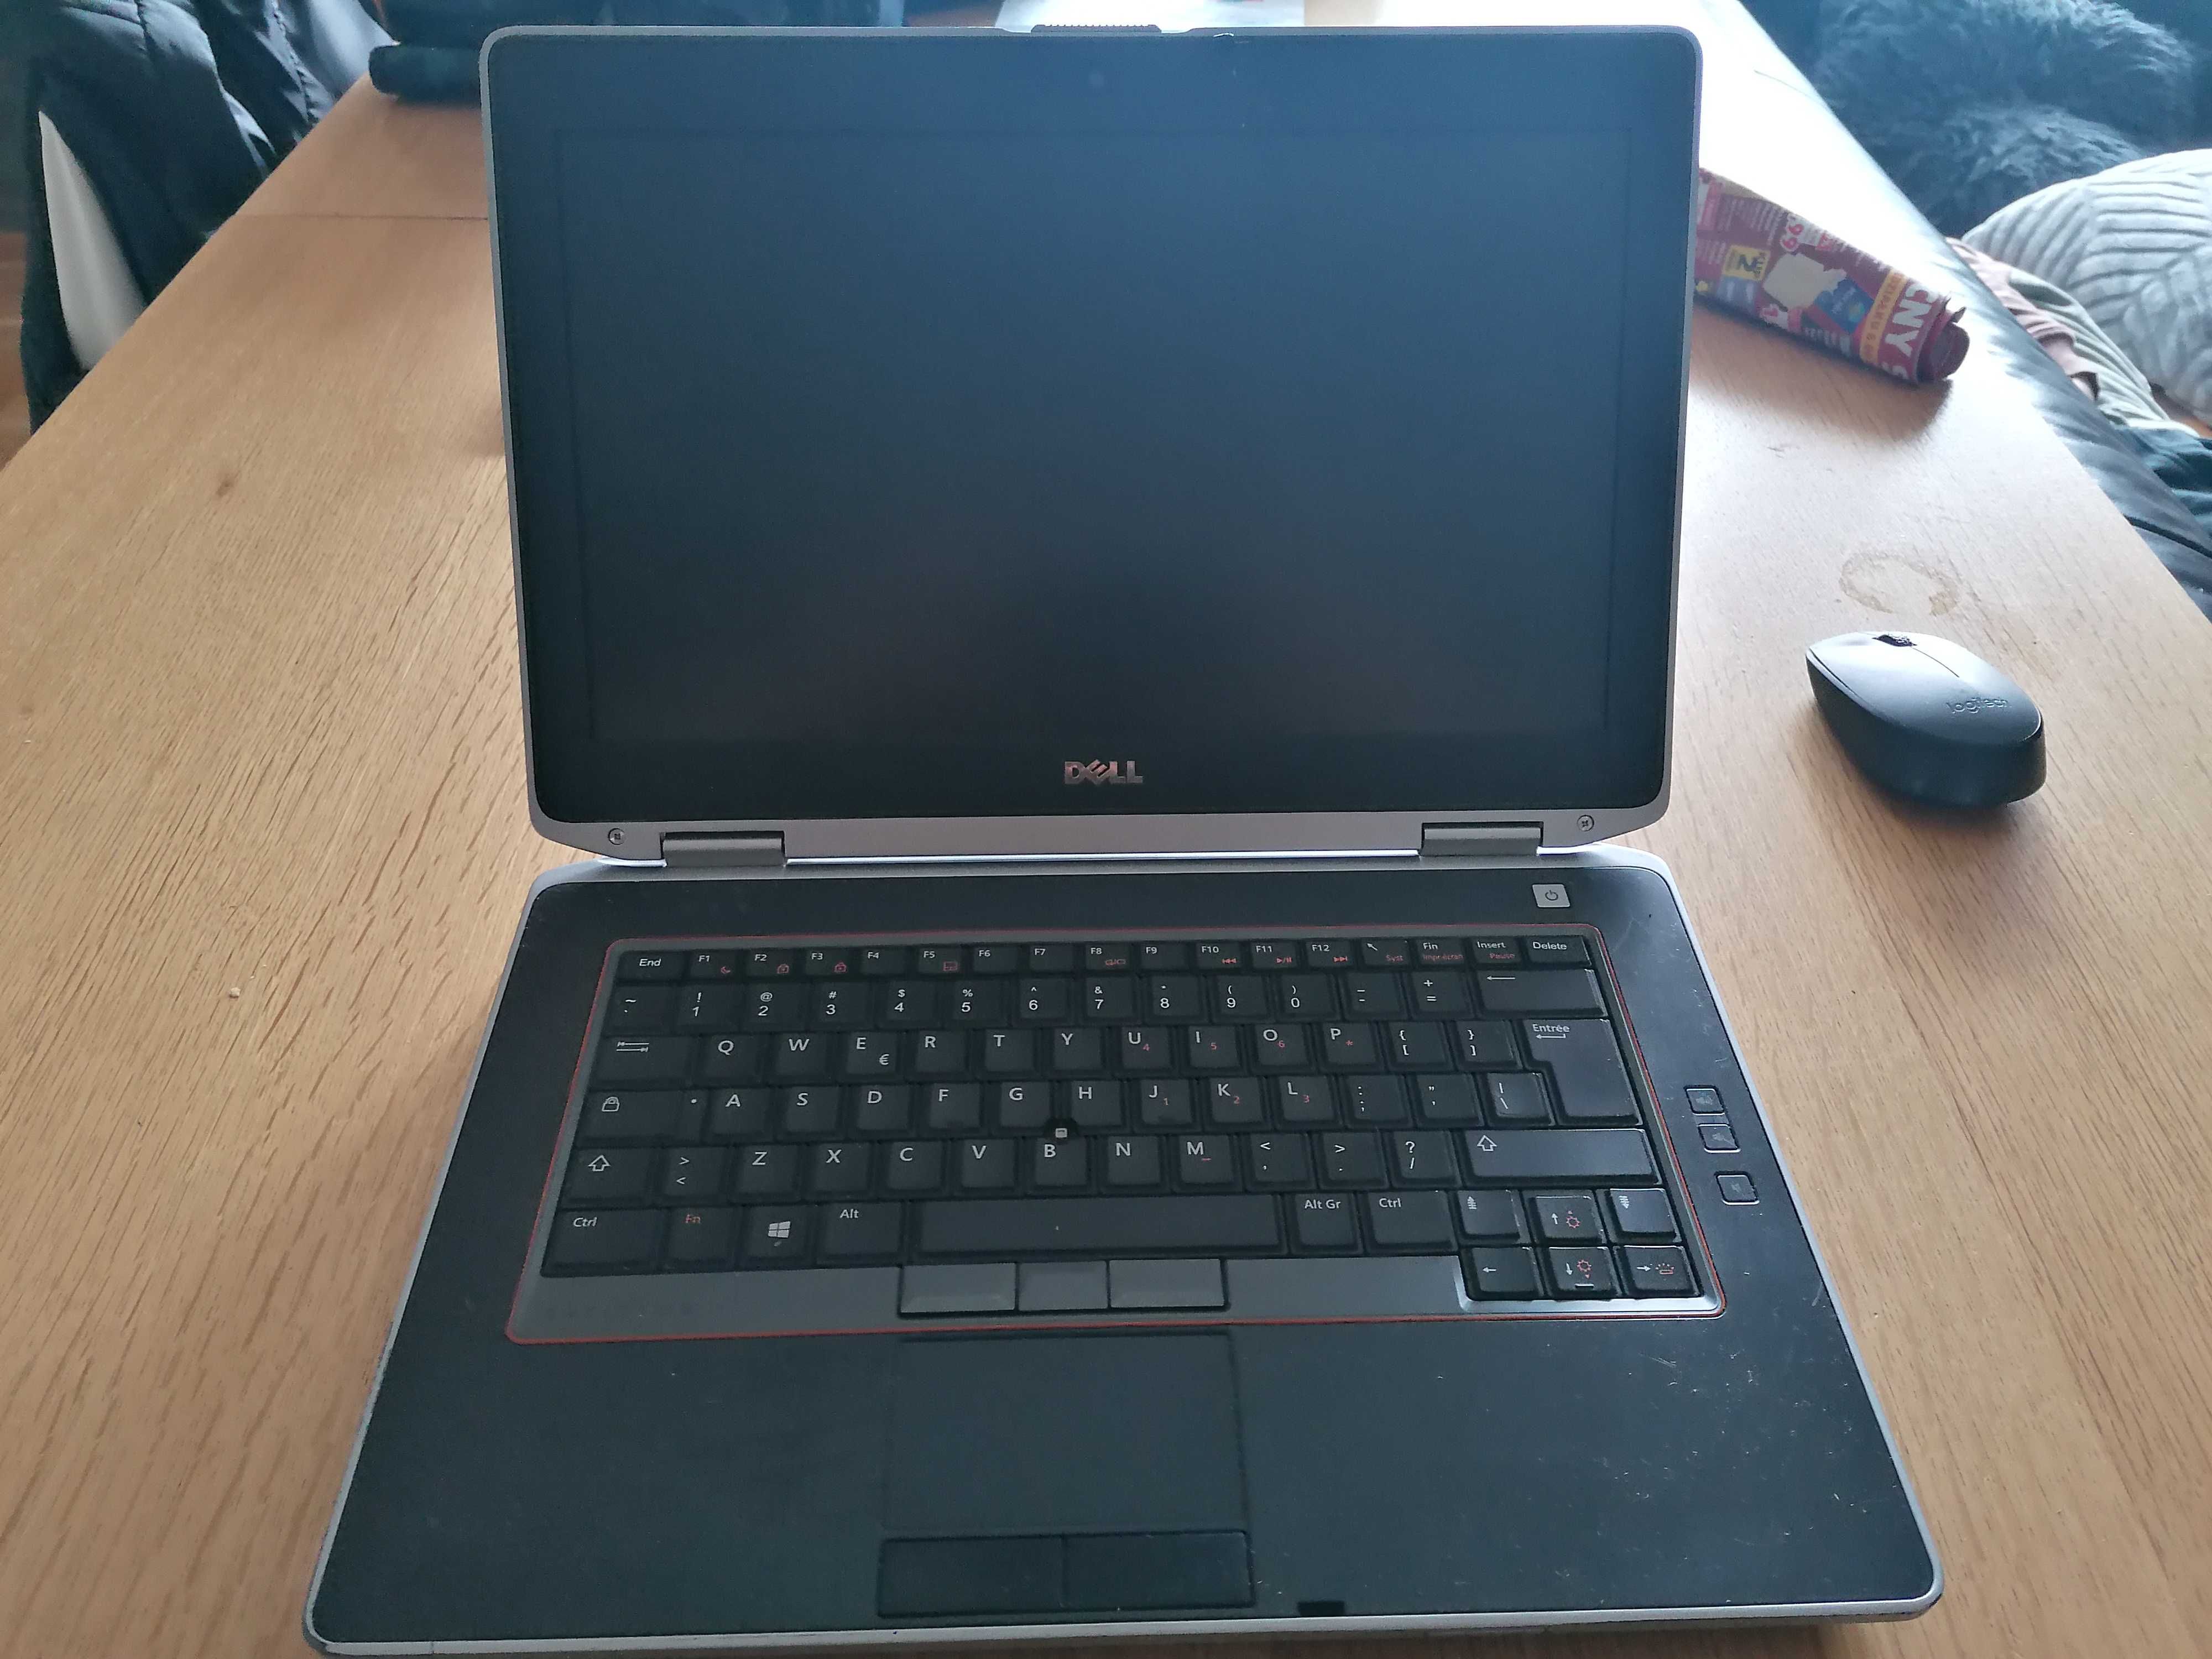 Laptop Dell wersja biznes